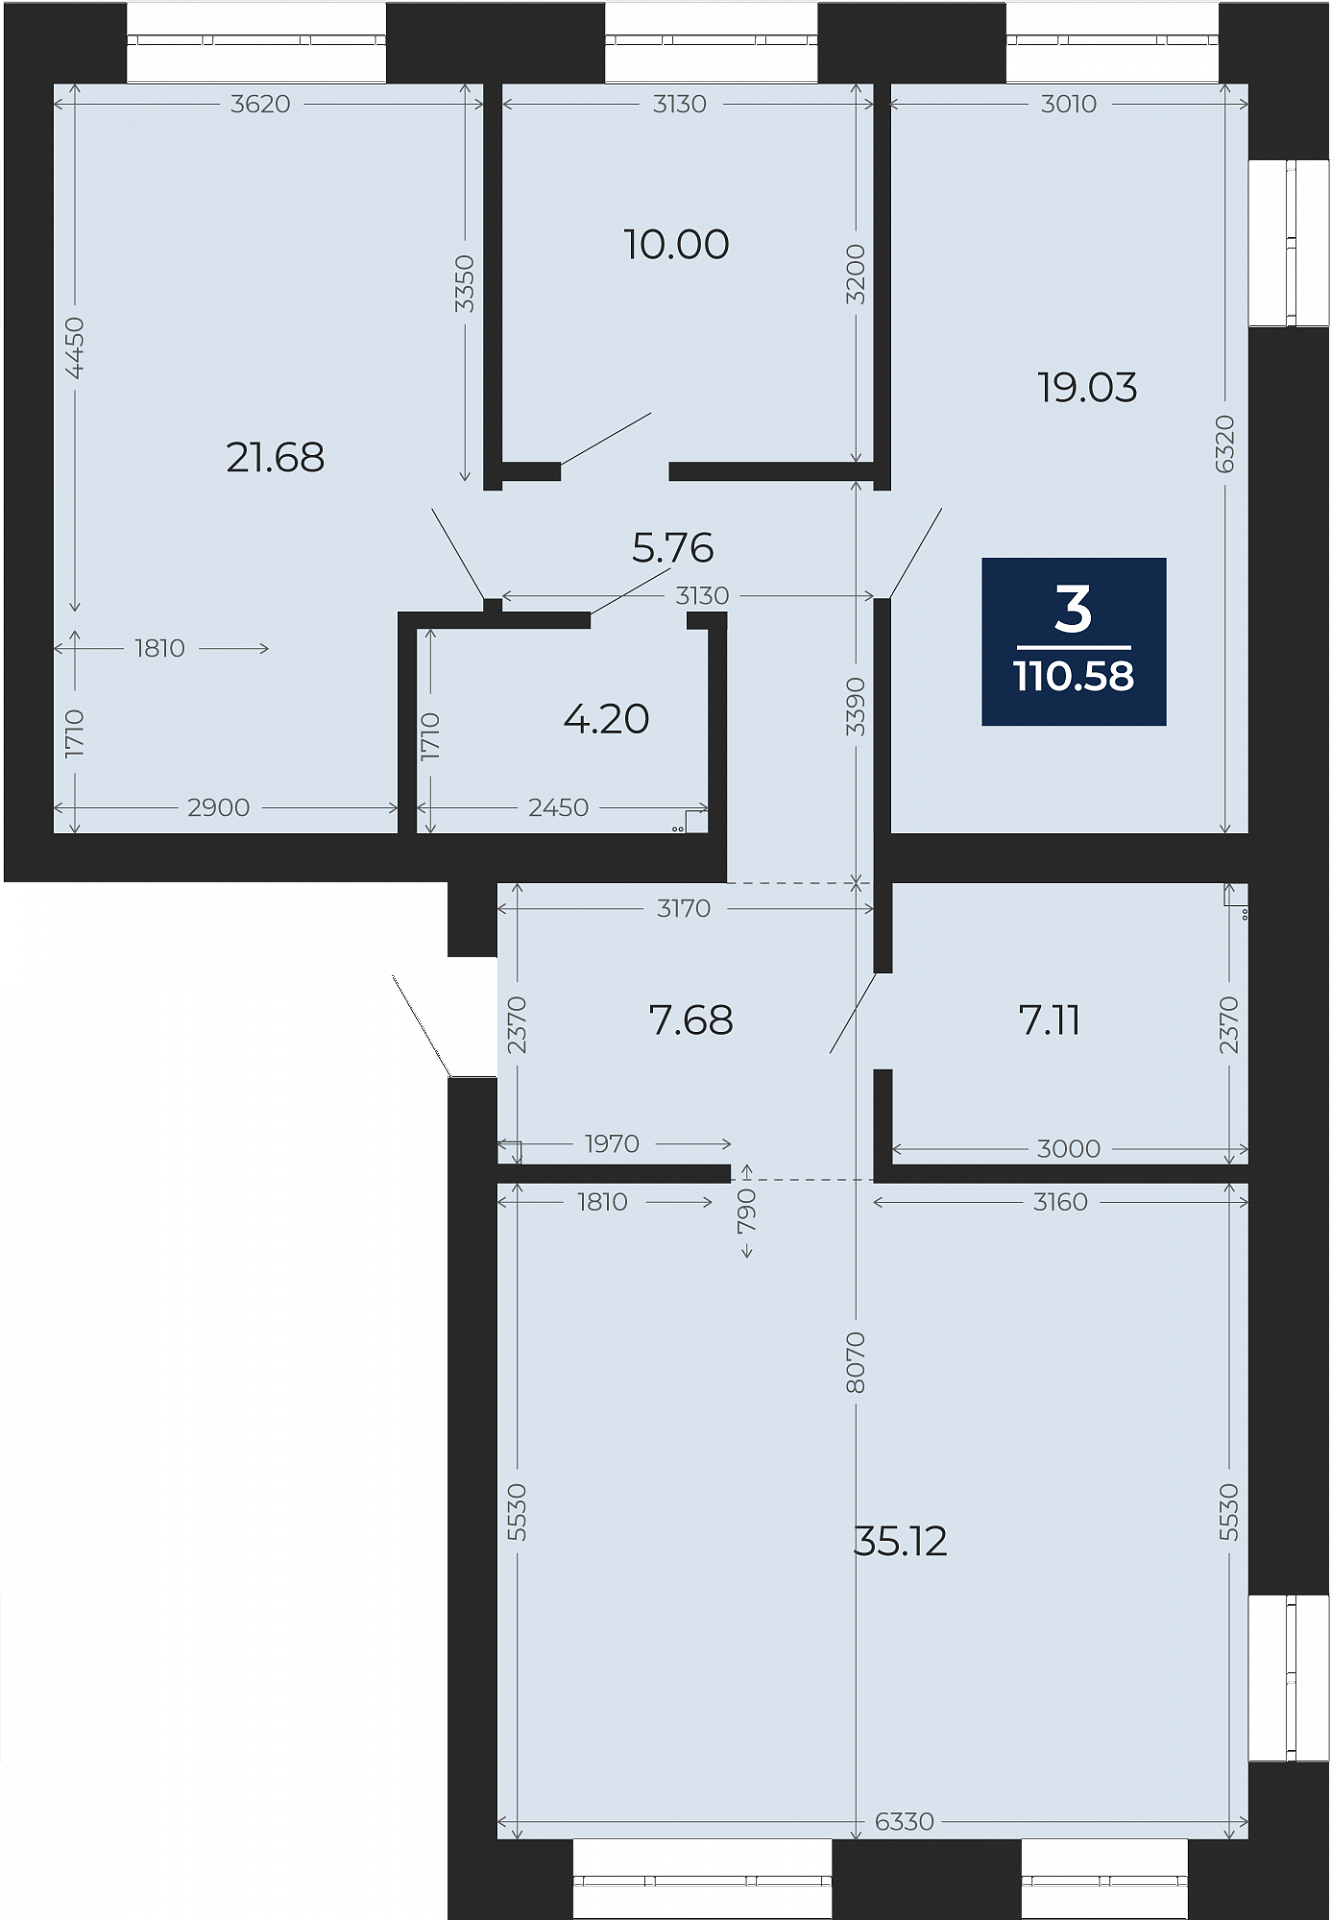 Квартира № 27, 3-комнатная, 110.58 кв. м, 5 этаж